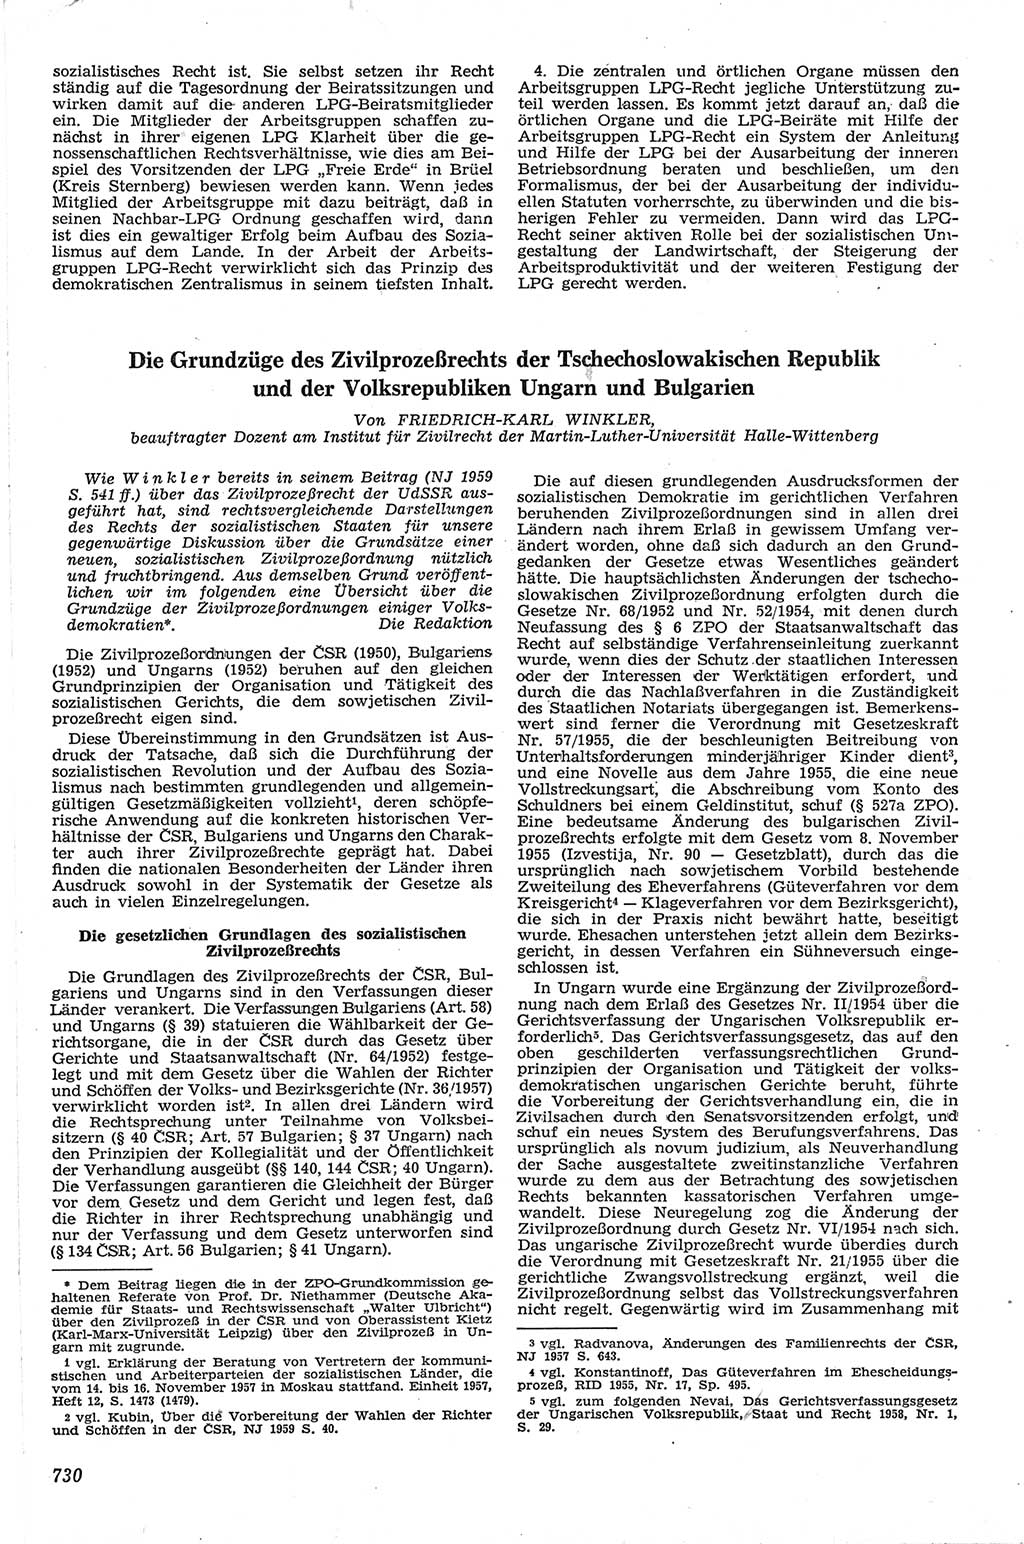 Neue Justiz (NJ), Zeitschrift für Recht und Rechtswissenschaft [Deutsche Demokratische Republik (DDR)], 13. Jahrgang 1959, Seite 730 (NJ DDR 1959, S. 730)